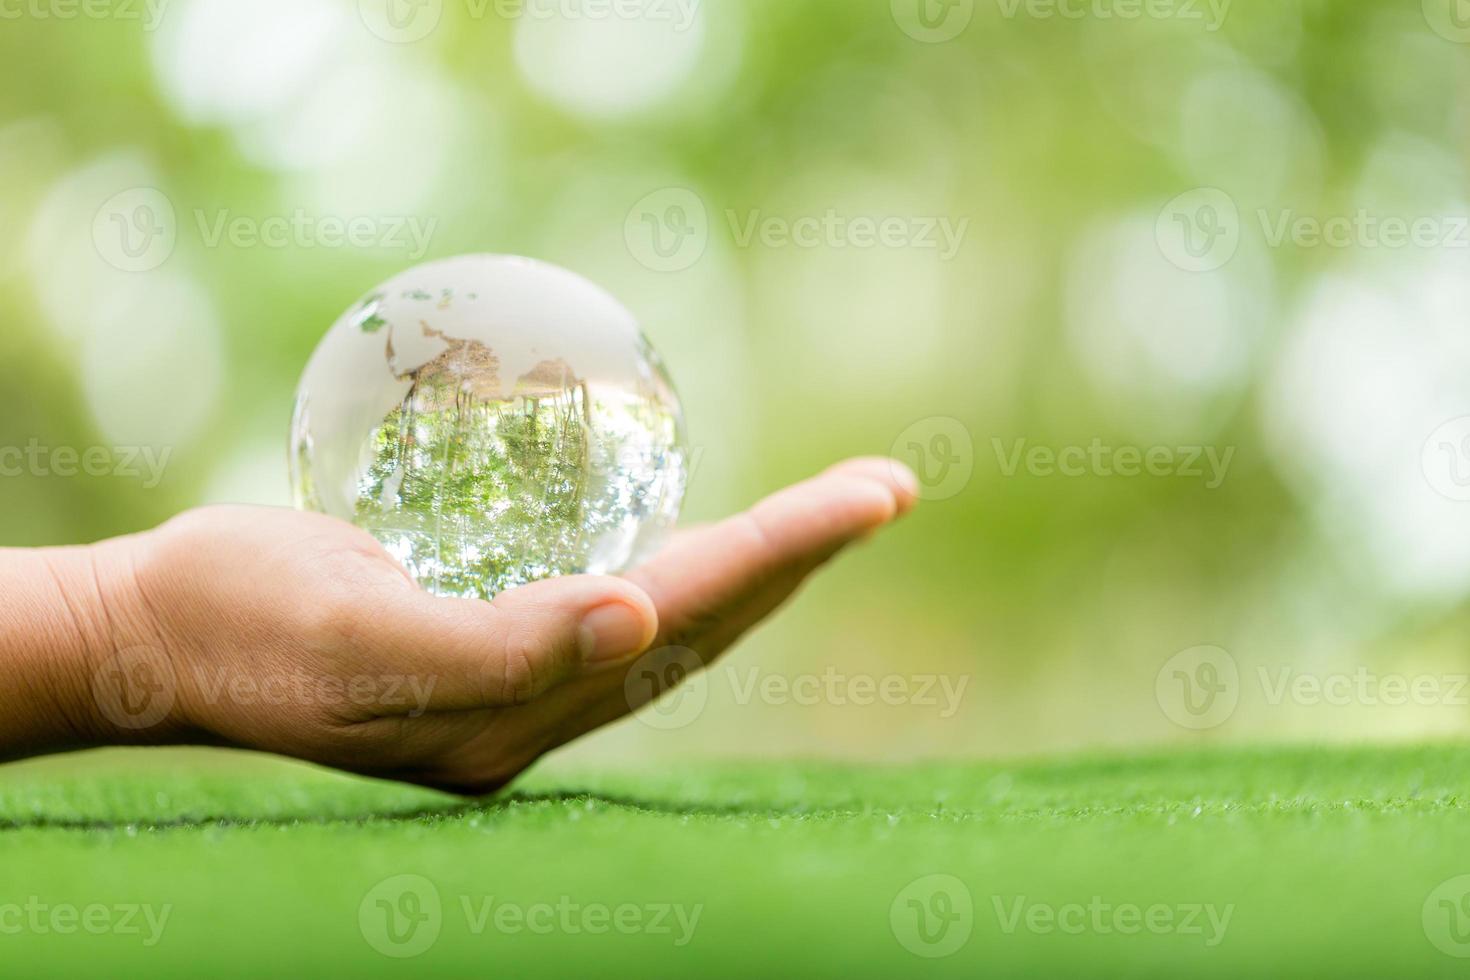 boule de cristal utilisée comme objet révélateur. parc naturel avec des arbres en arrière-plan. main pour l'environnement, le social et la gouvernance dans les affaires durables et éthiques sur fond vert. photo